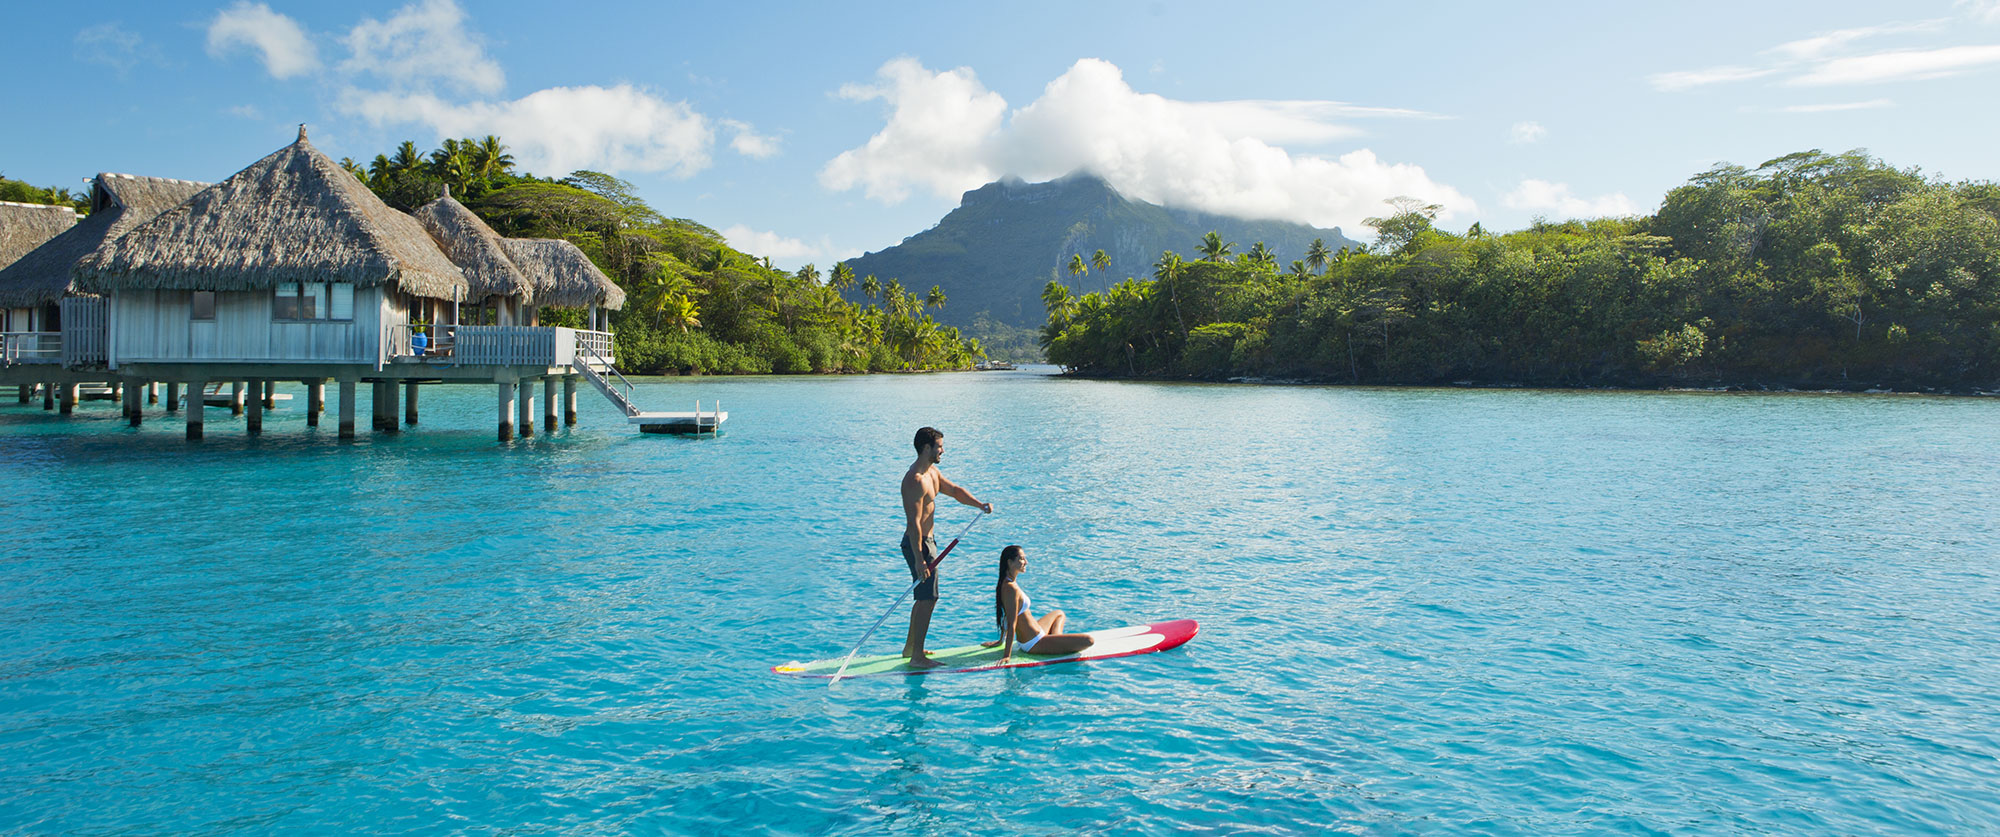 Bora Bora Honeymoons: Beach Resorts and Overwater Bungalow Vacation